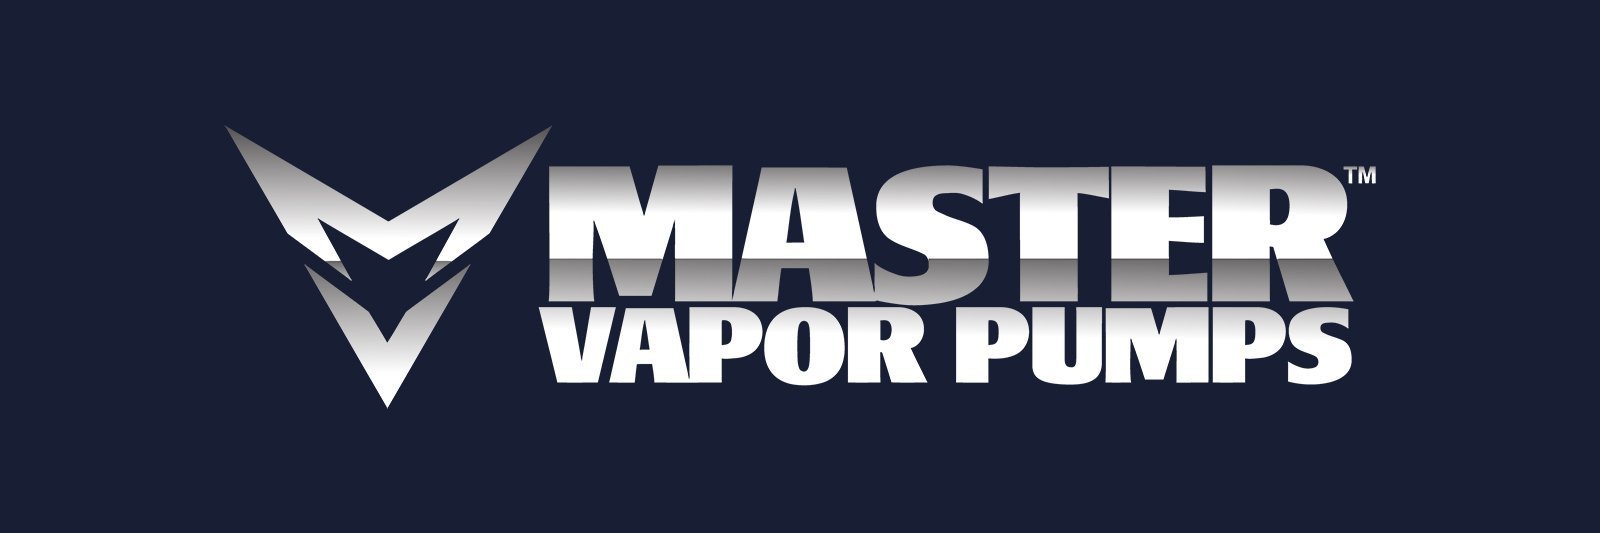 Pump Part - MVP - 60 PSI, 150 PSI, Liquid, XL150 - Diaphragm Cover Bolts - 8 pack